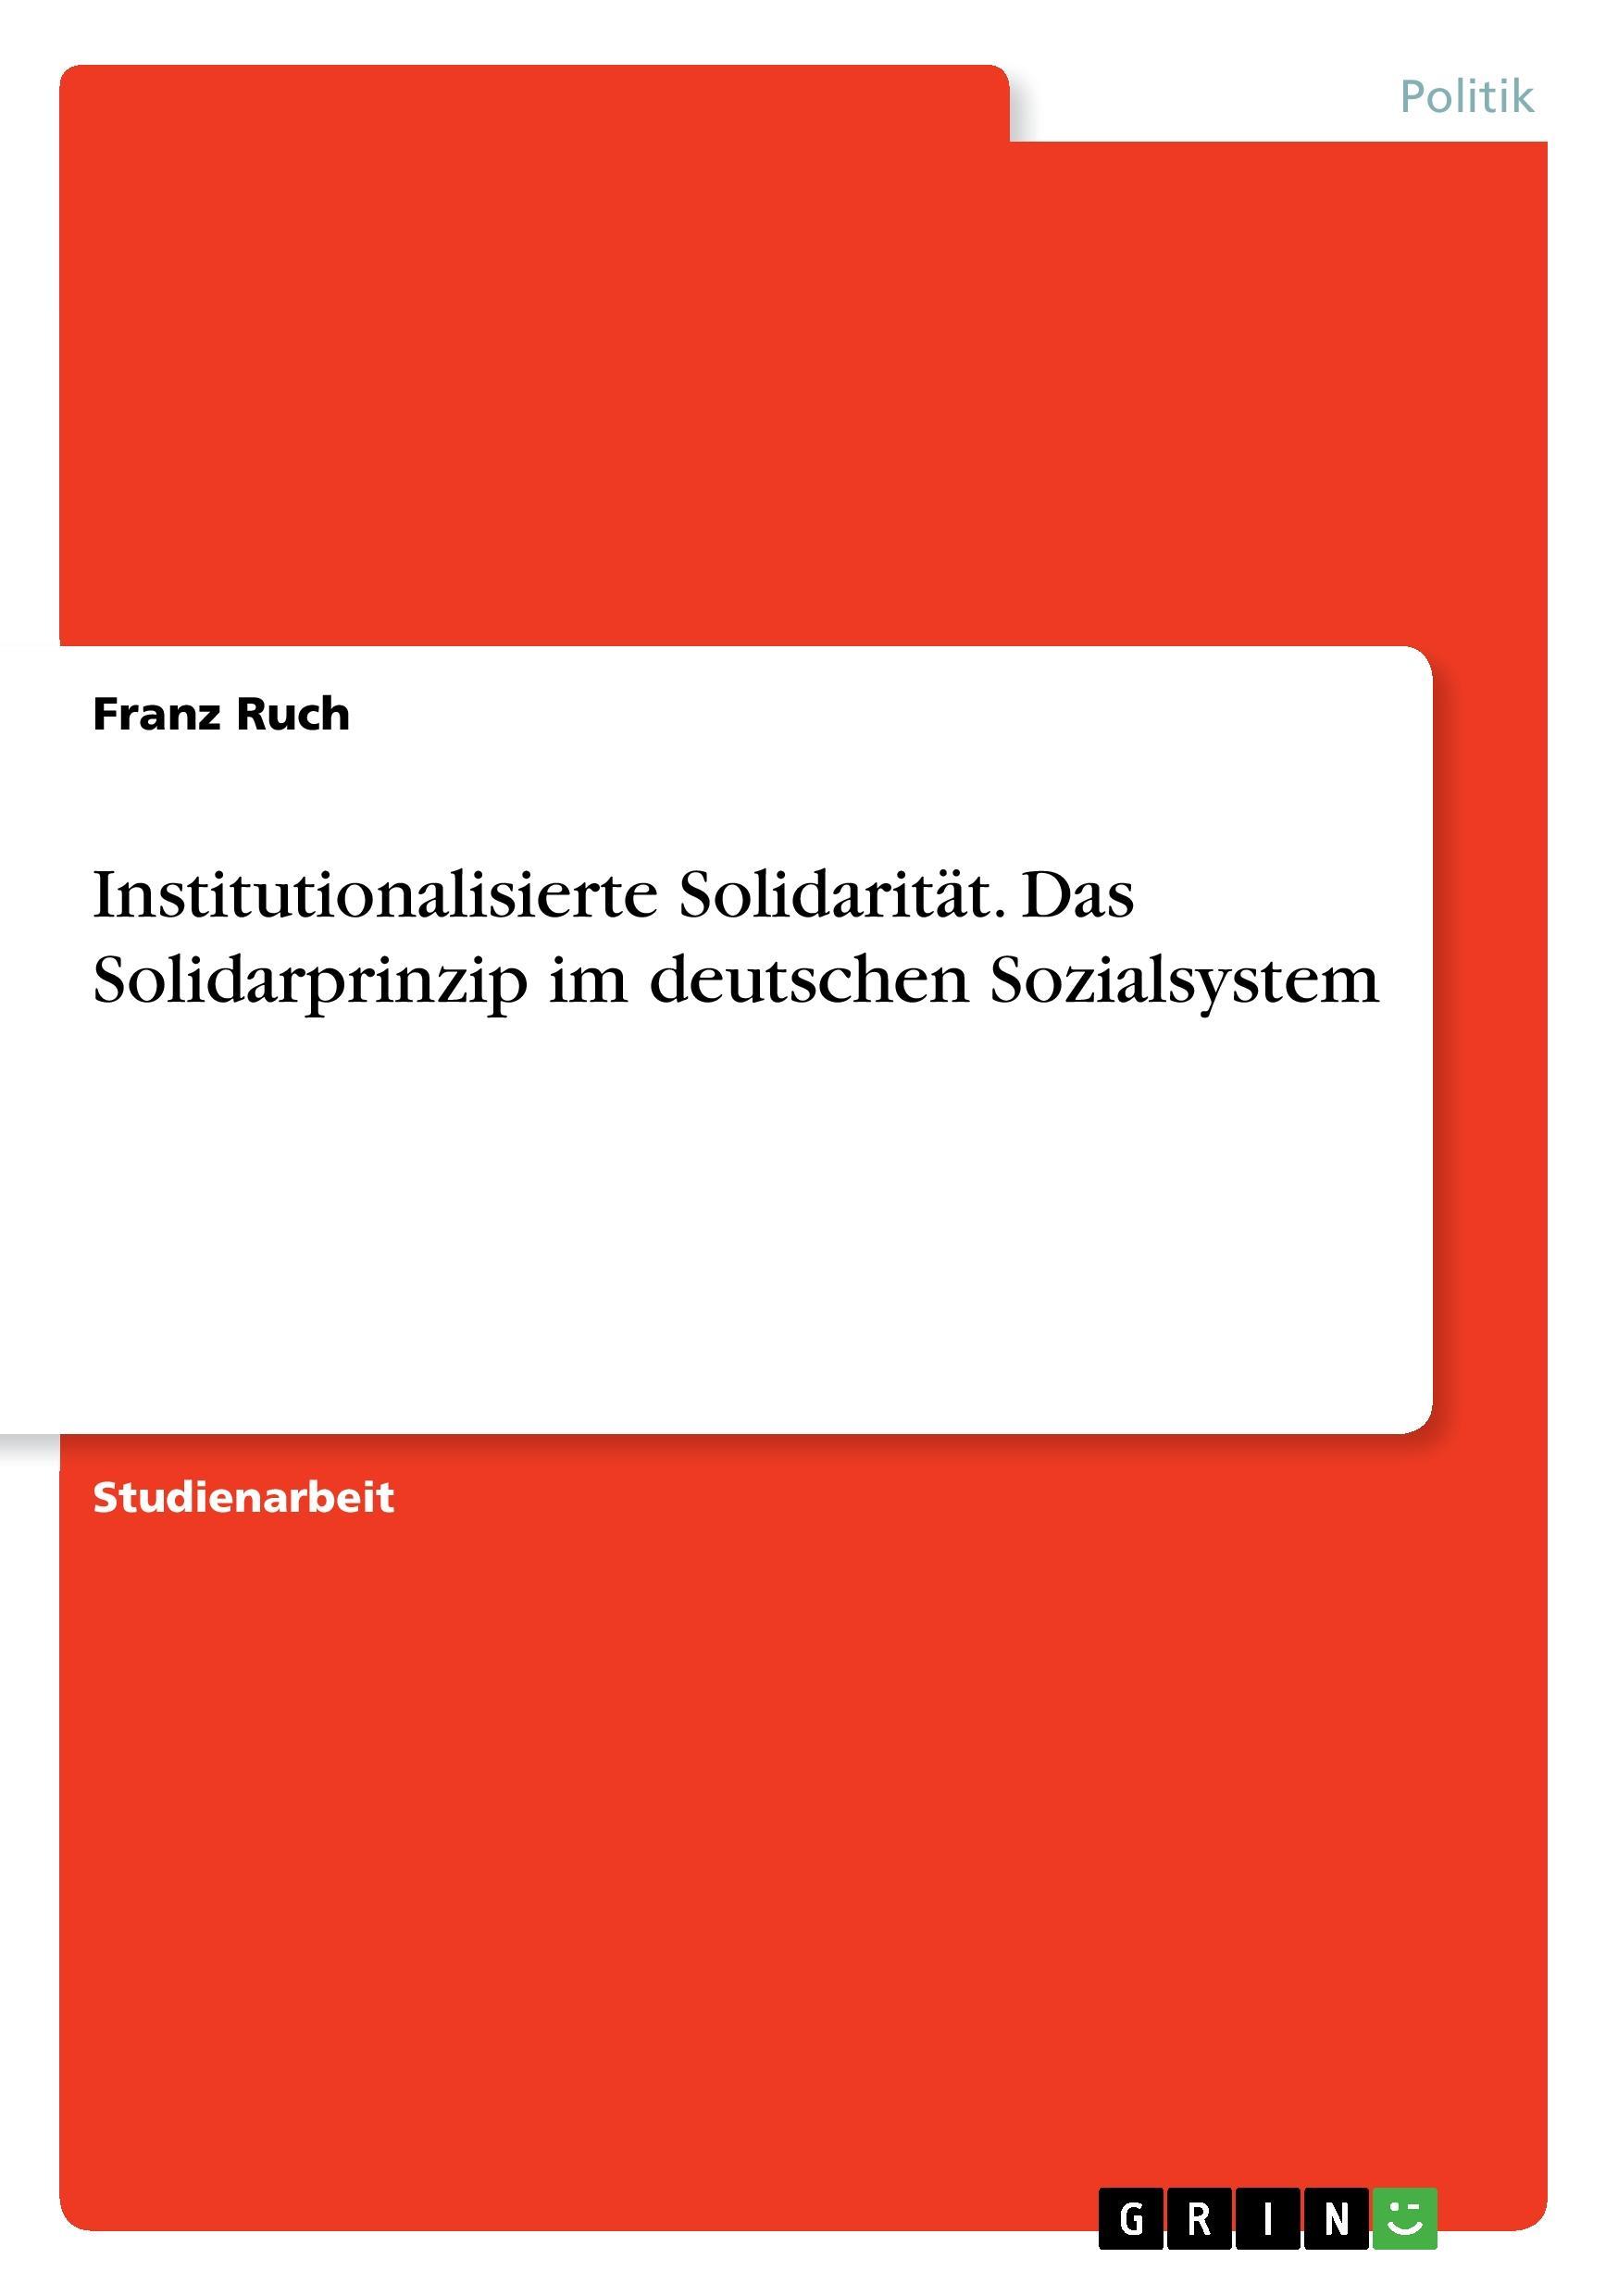 Institutionalisierte Solidaritaet. Das Solidarprinzip im deutschen Sozialsystem - Ruch, Franz